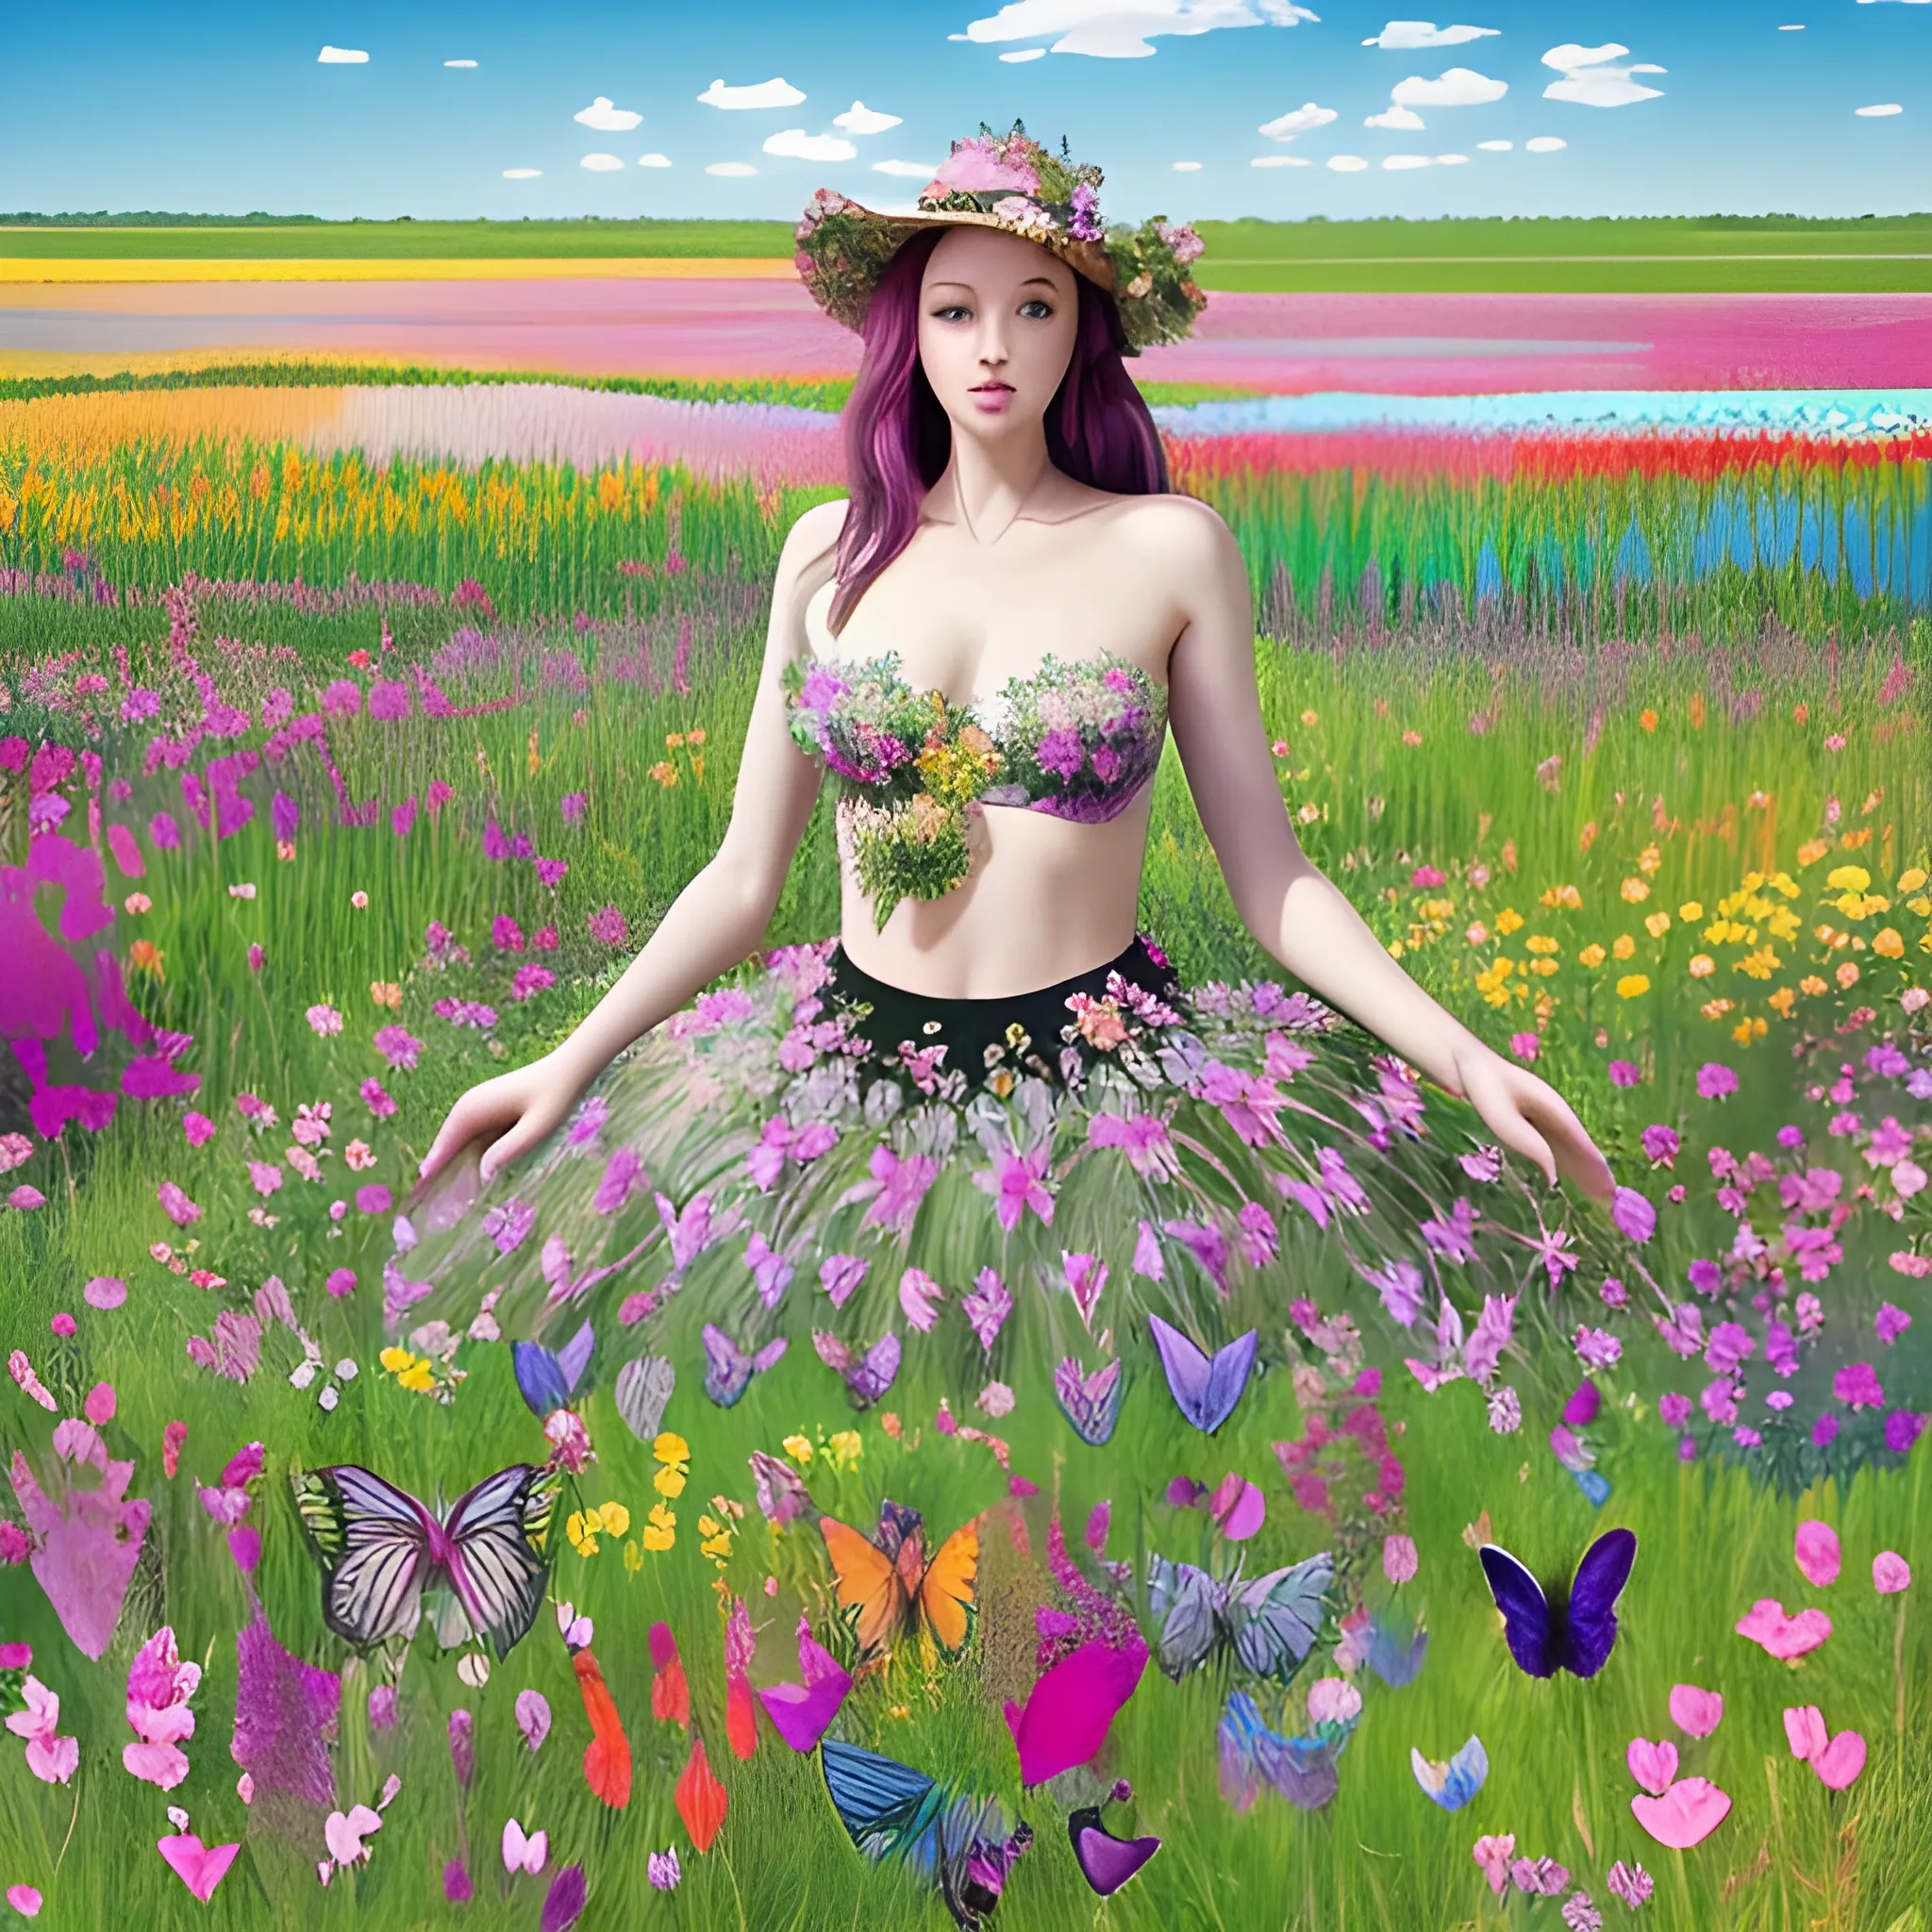 jolie femme dans une prairie fleurie et des papillons multicolores qui volent autour de la jolie femme debout dans la prairie fleurie de beaucoup de fleurs exotiques colorées, Trippy